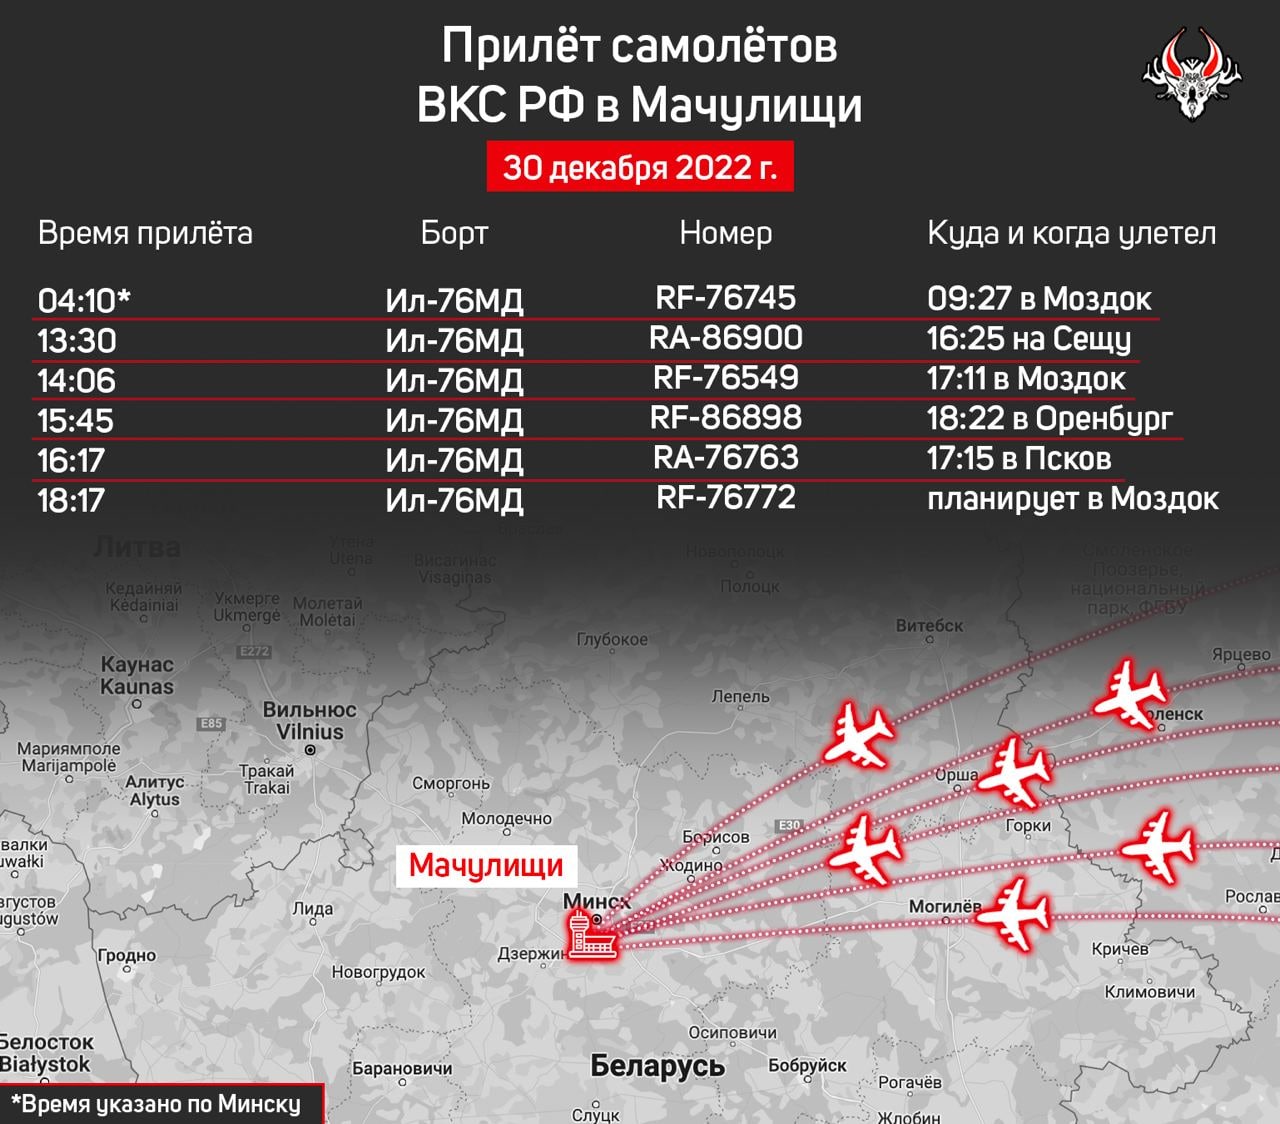 Телеграмм 18 война с украиной фото 75